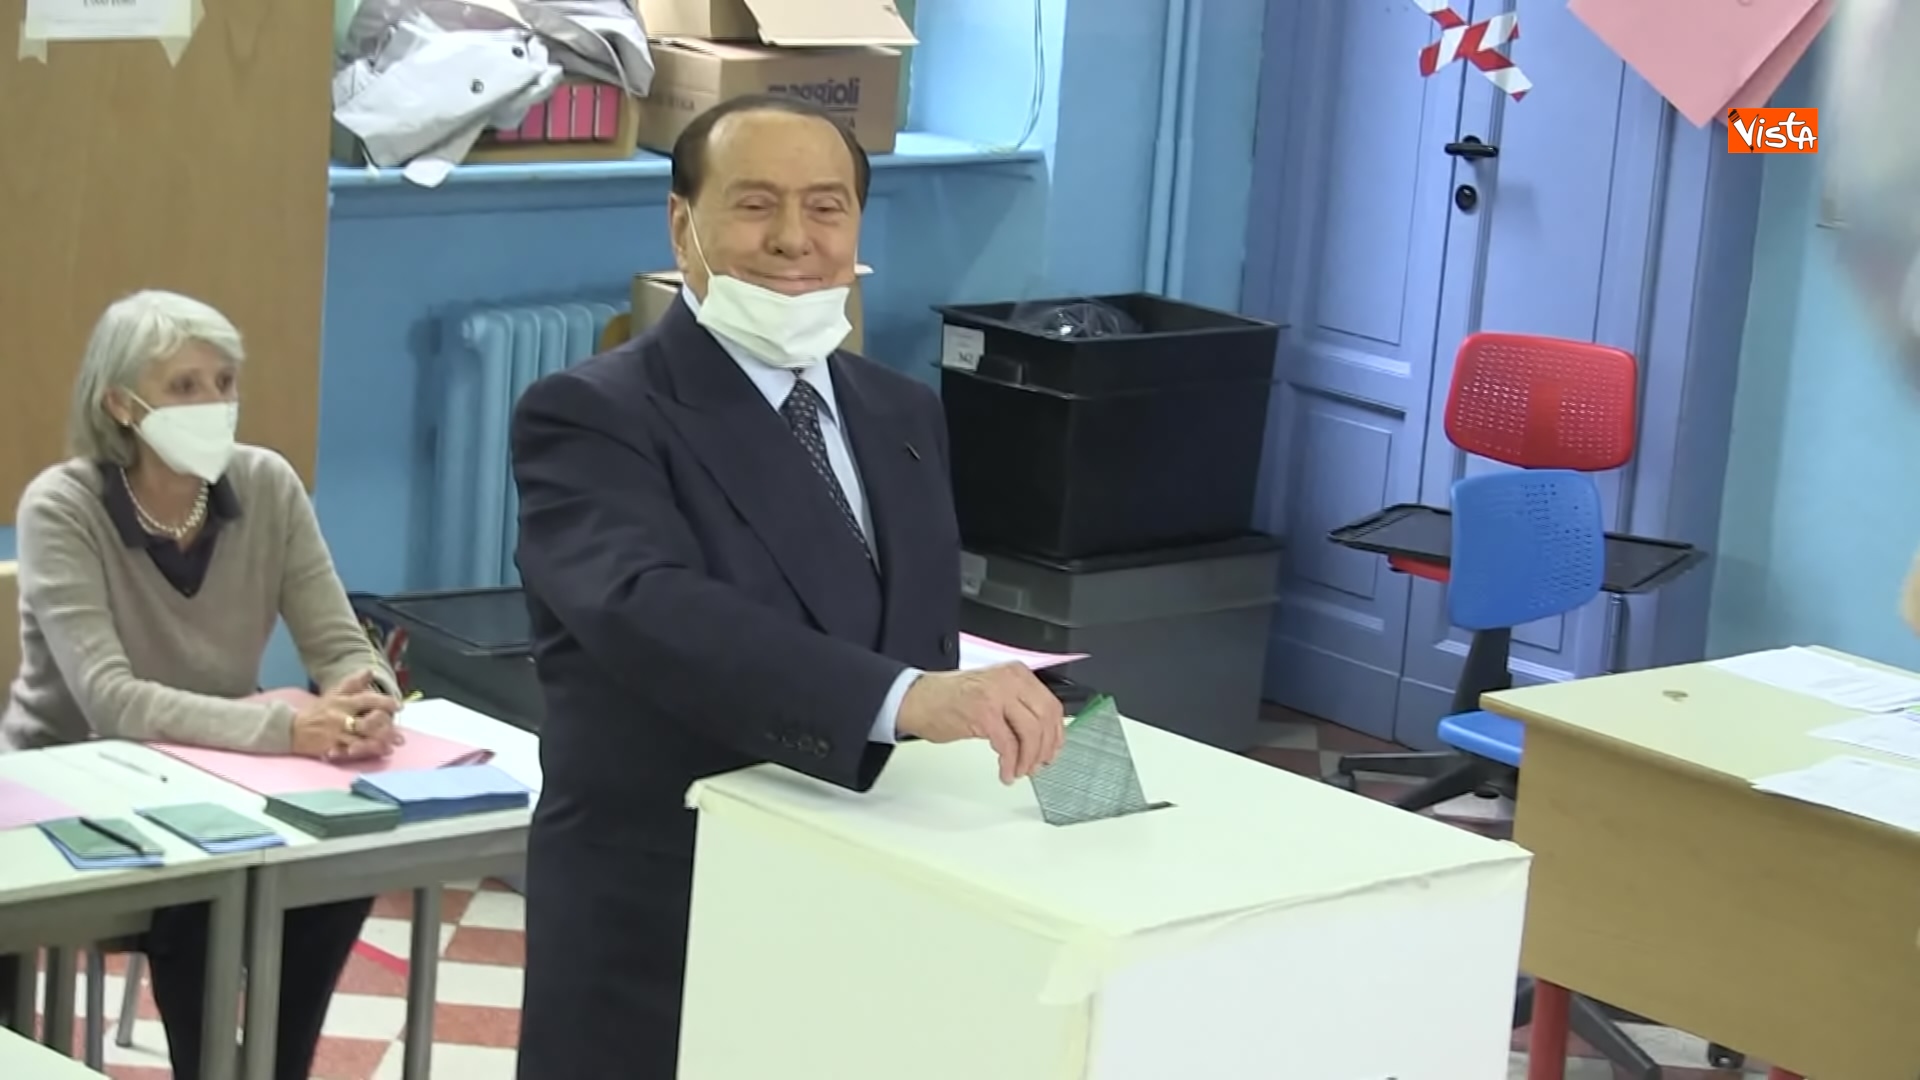 03-10-21 Silvio Berlusconi a Milano per votare alle amministrative Le immagini 01_023590362460898656953